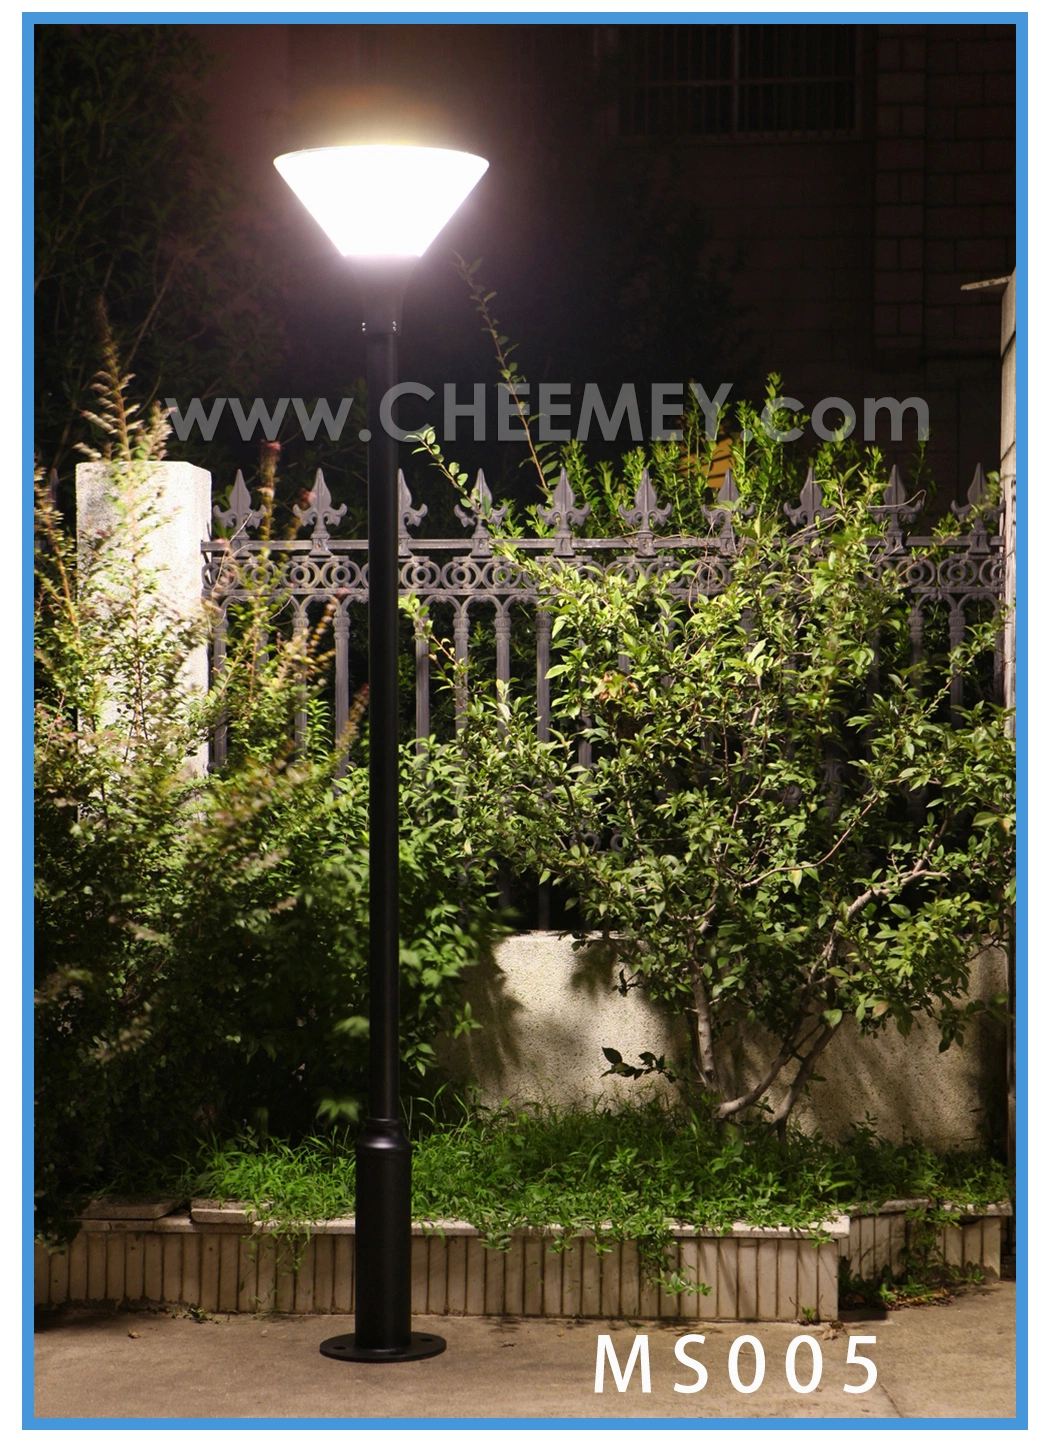 Solar Power LED Garden Road Lantern for Smart Home